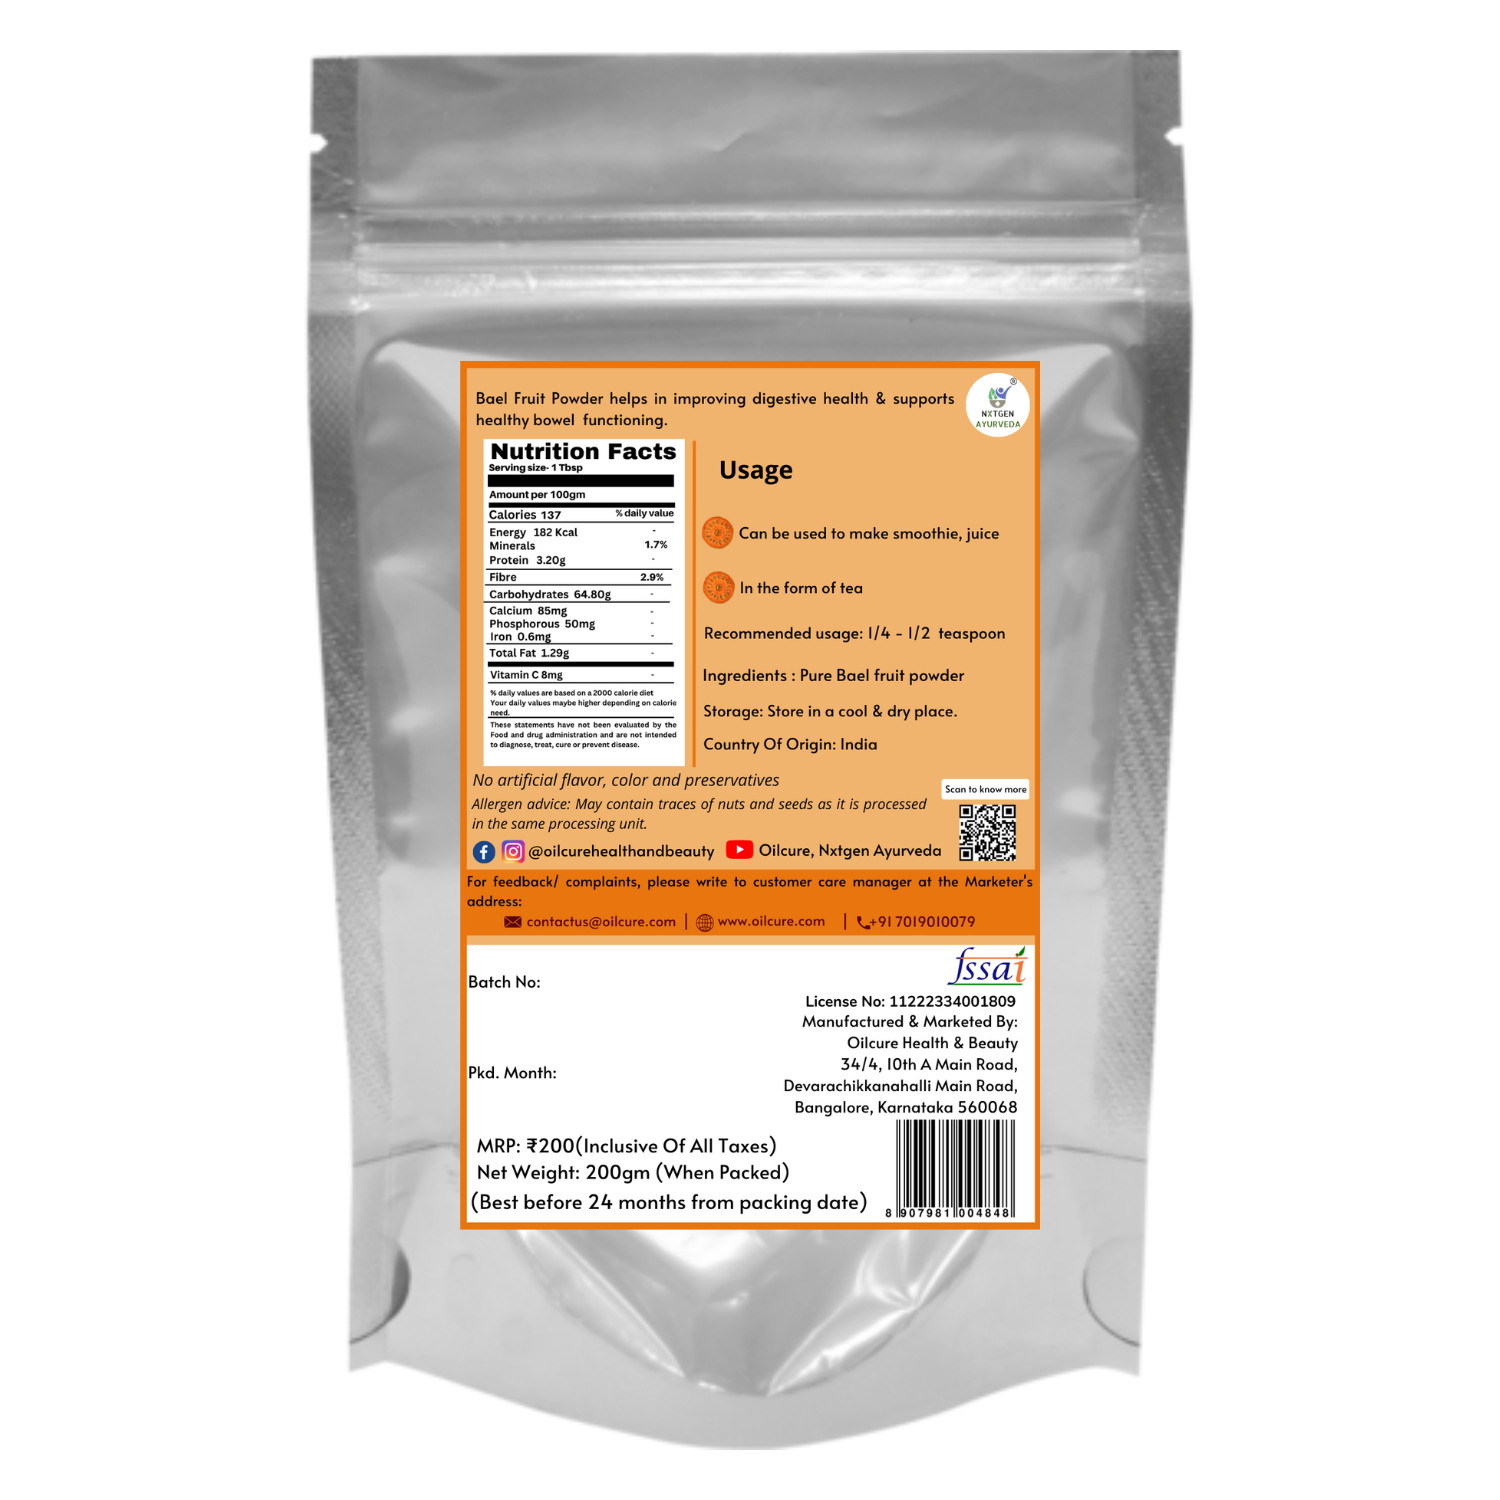 Nxtgen Ayurveda Bael Fruit Powder (Aegle Marmelos) -200 gms (Pack of 2)